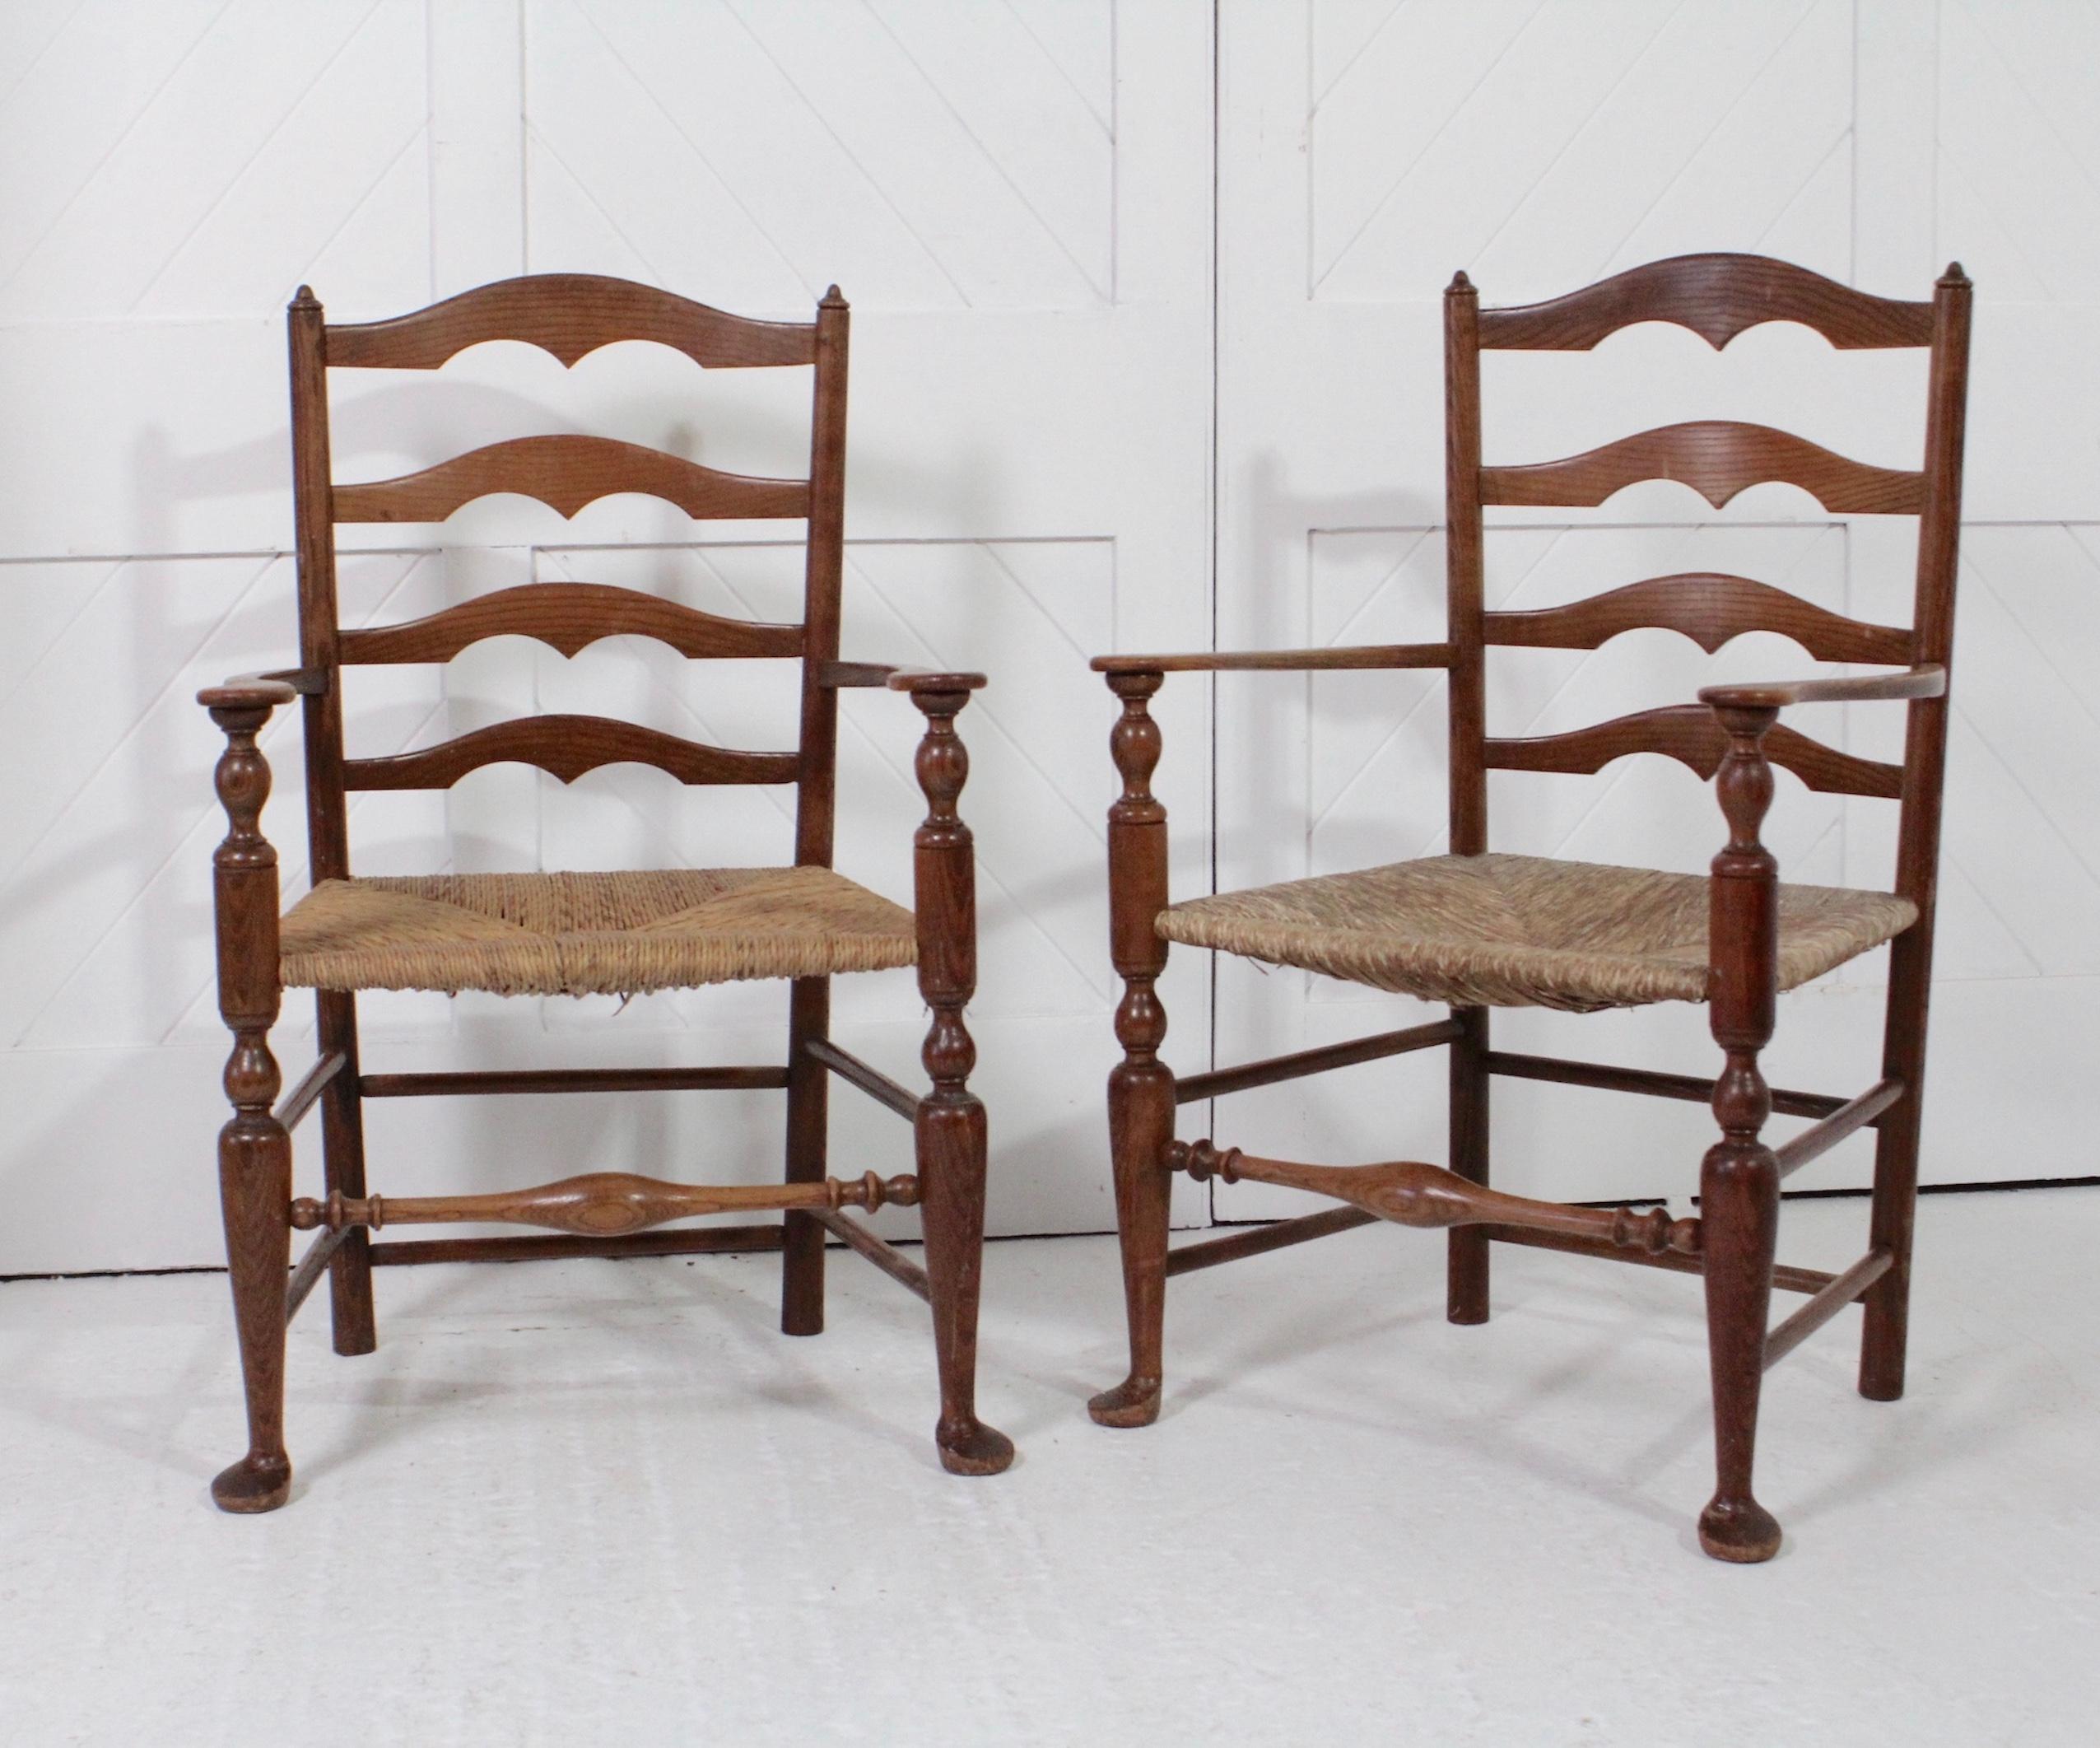 Paire de fauteuils en chêne à dossier échelonné Arts & Crafts
Avec des sièges en rangs serrés
Par Sir Edwin Landseer Lutyens
Circa 1902

Hauteur 98cm Largeur 61cm Profondeur 50cm

